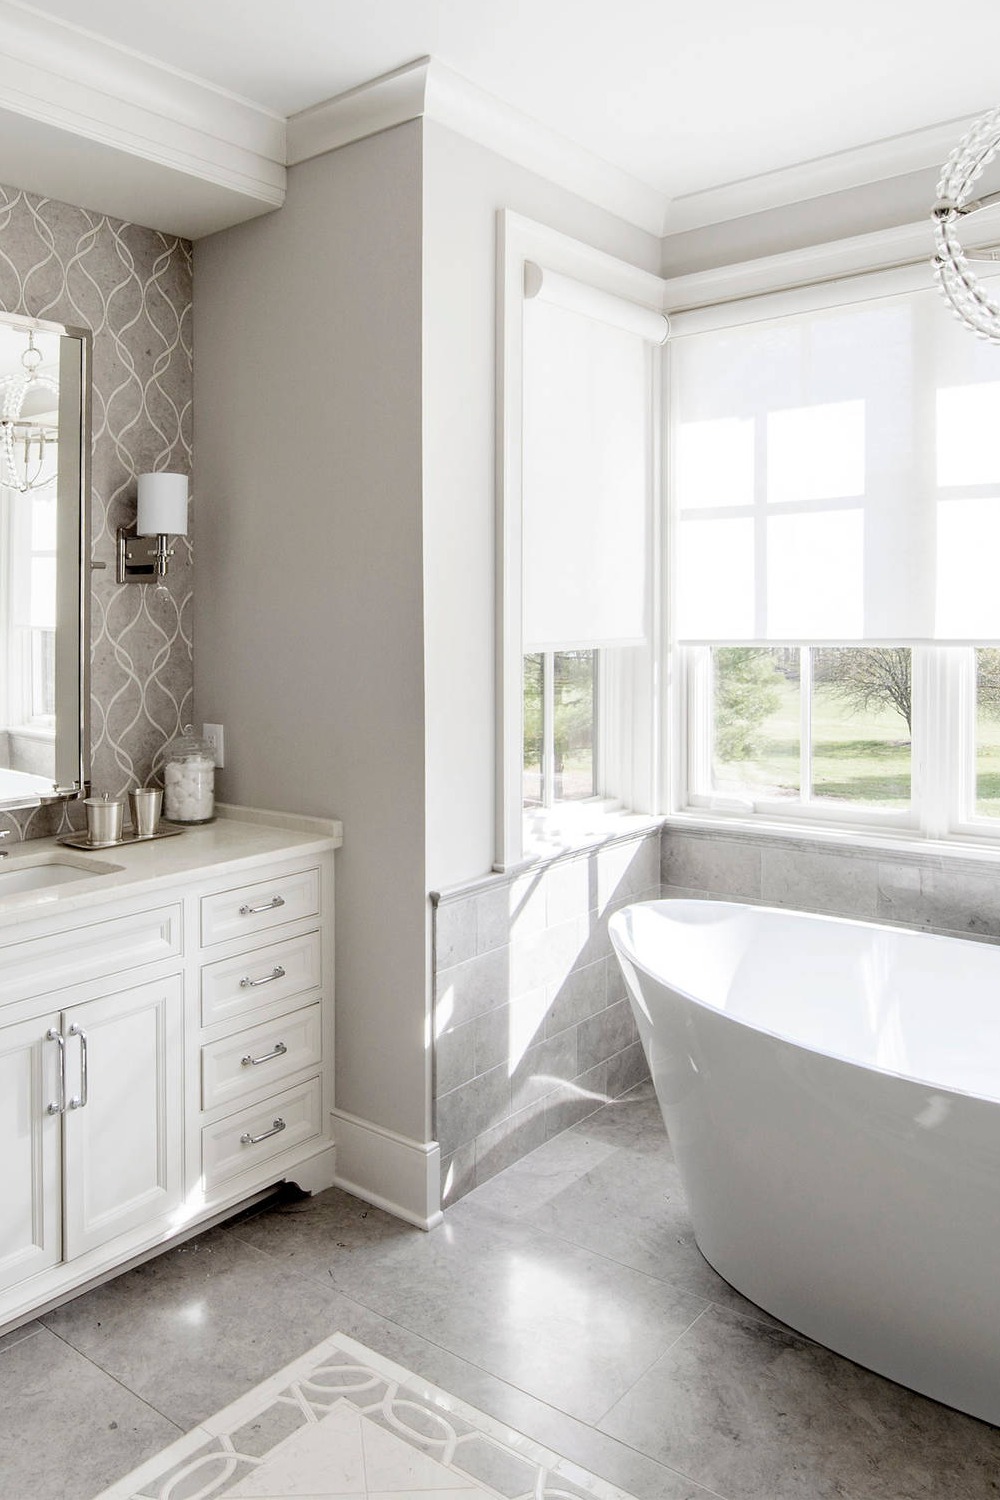 Large Format Porcelain Tile Freestanding Bathtub White Cabinetry Motif Backsplash